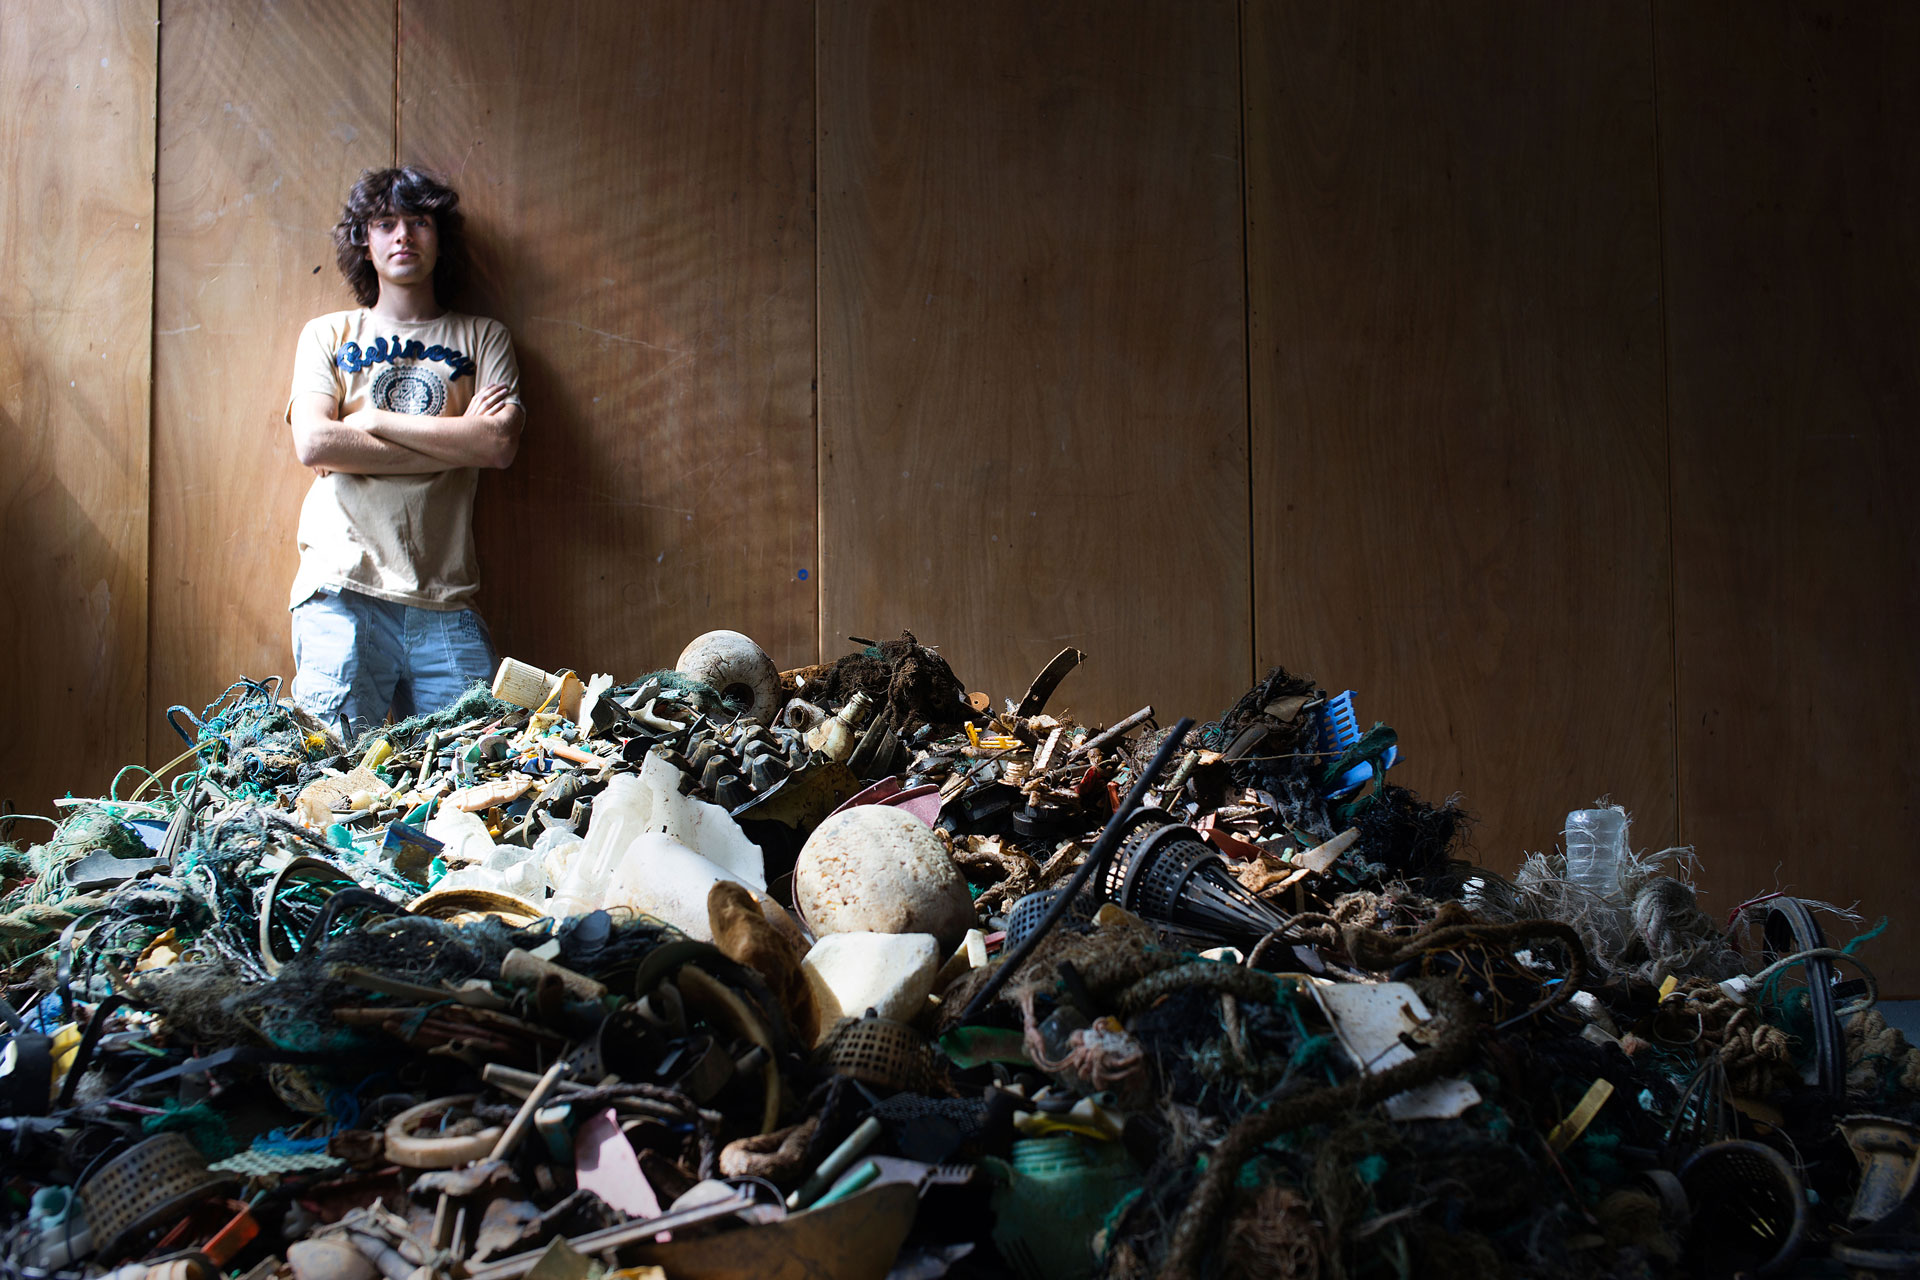 An Land soll der Müll dann sortiert und recycelt werden. Quelle: The Ocean Cleanup Projekt